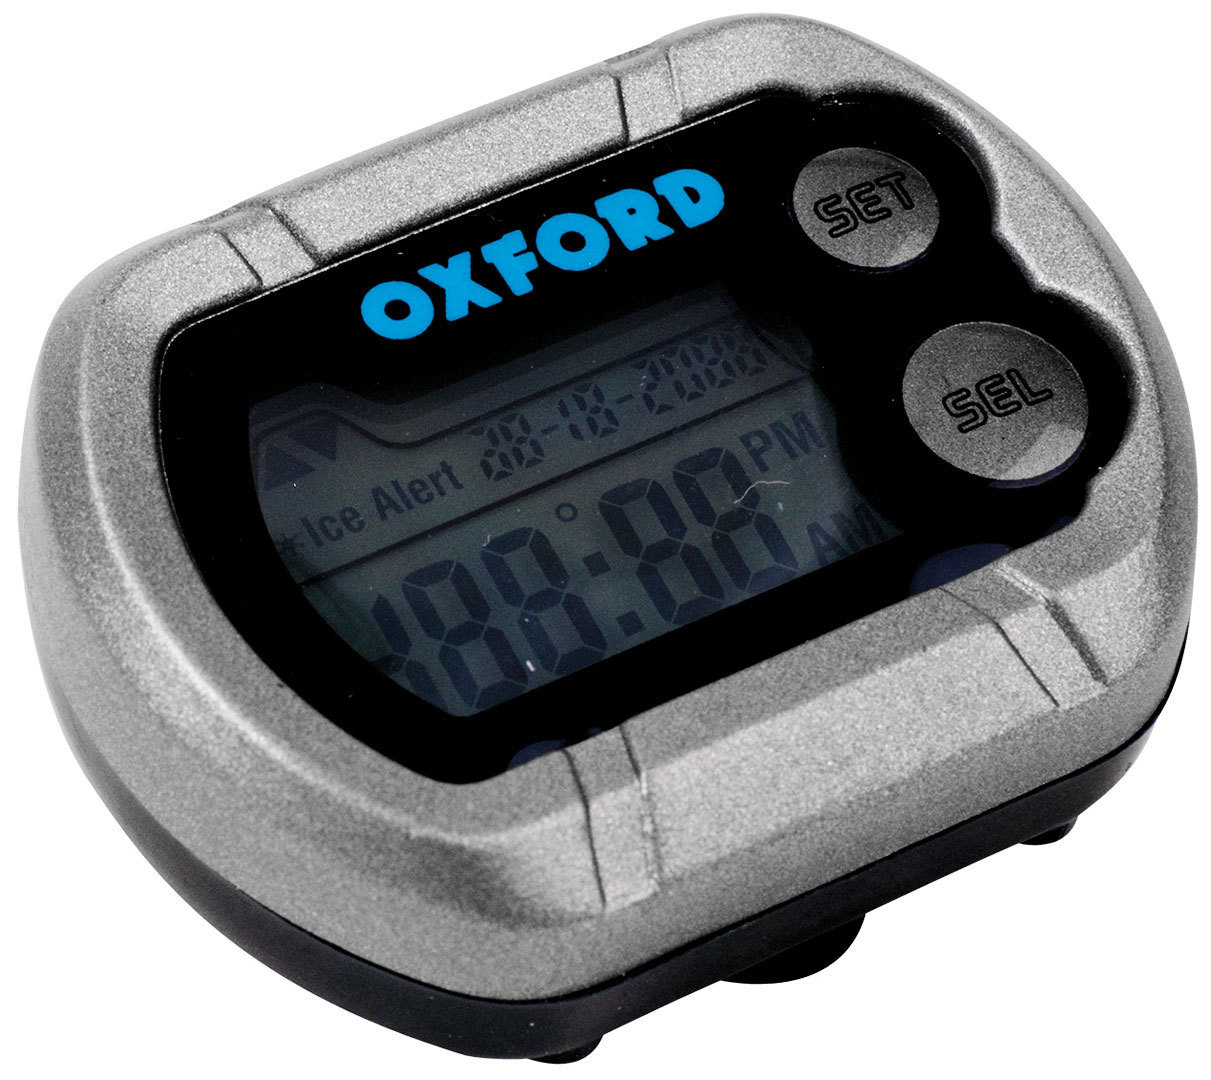 Цифровые часы Oxford Deluxe для мотоцикла цена и фото